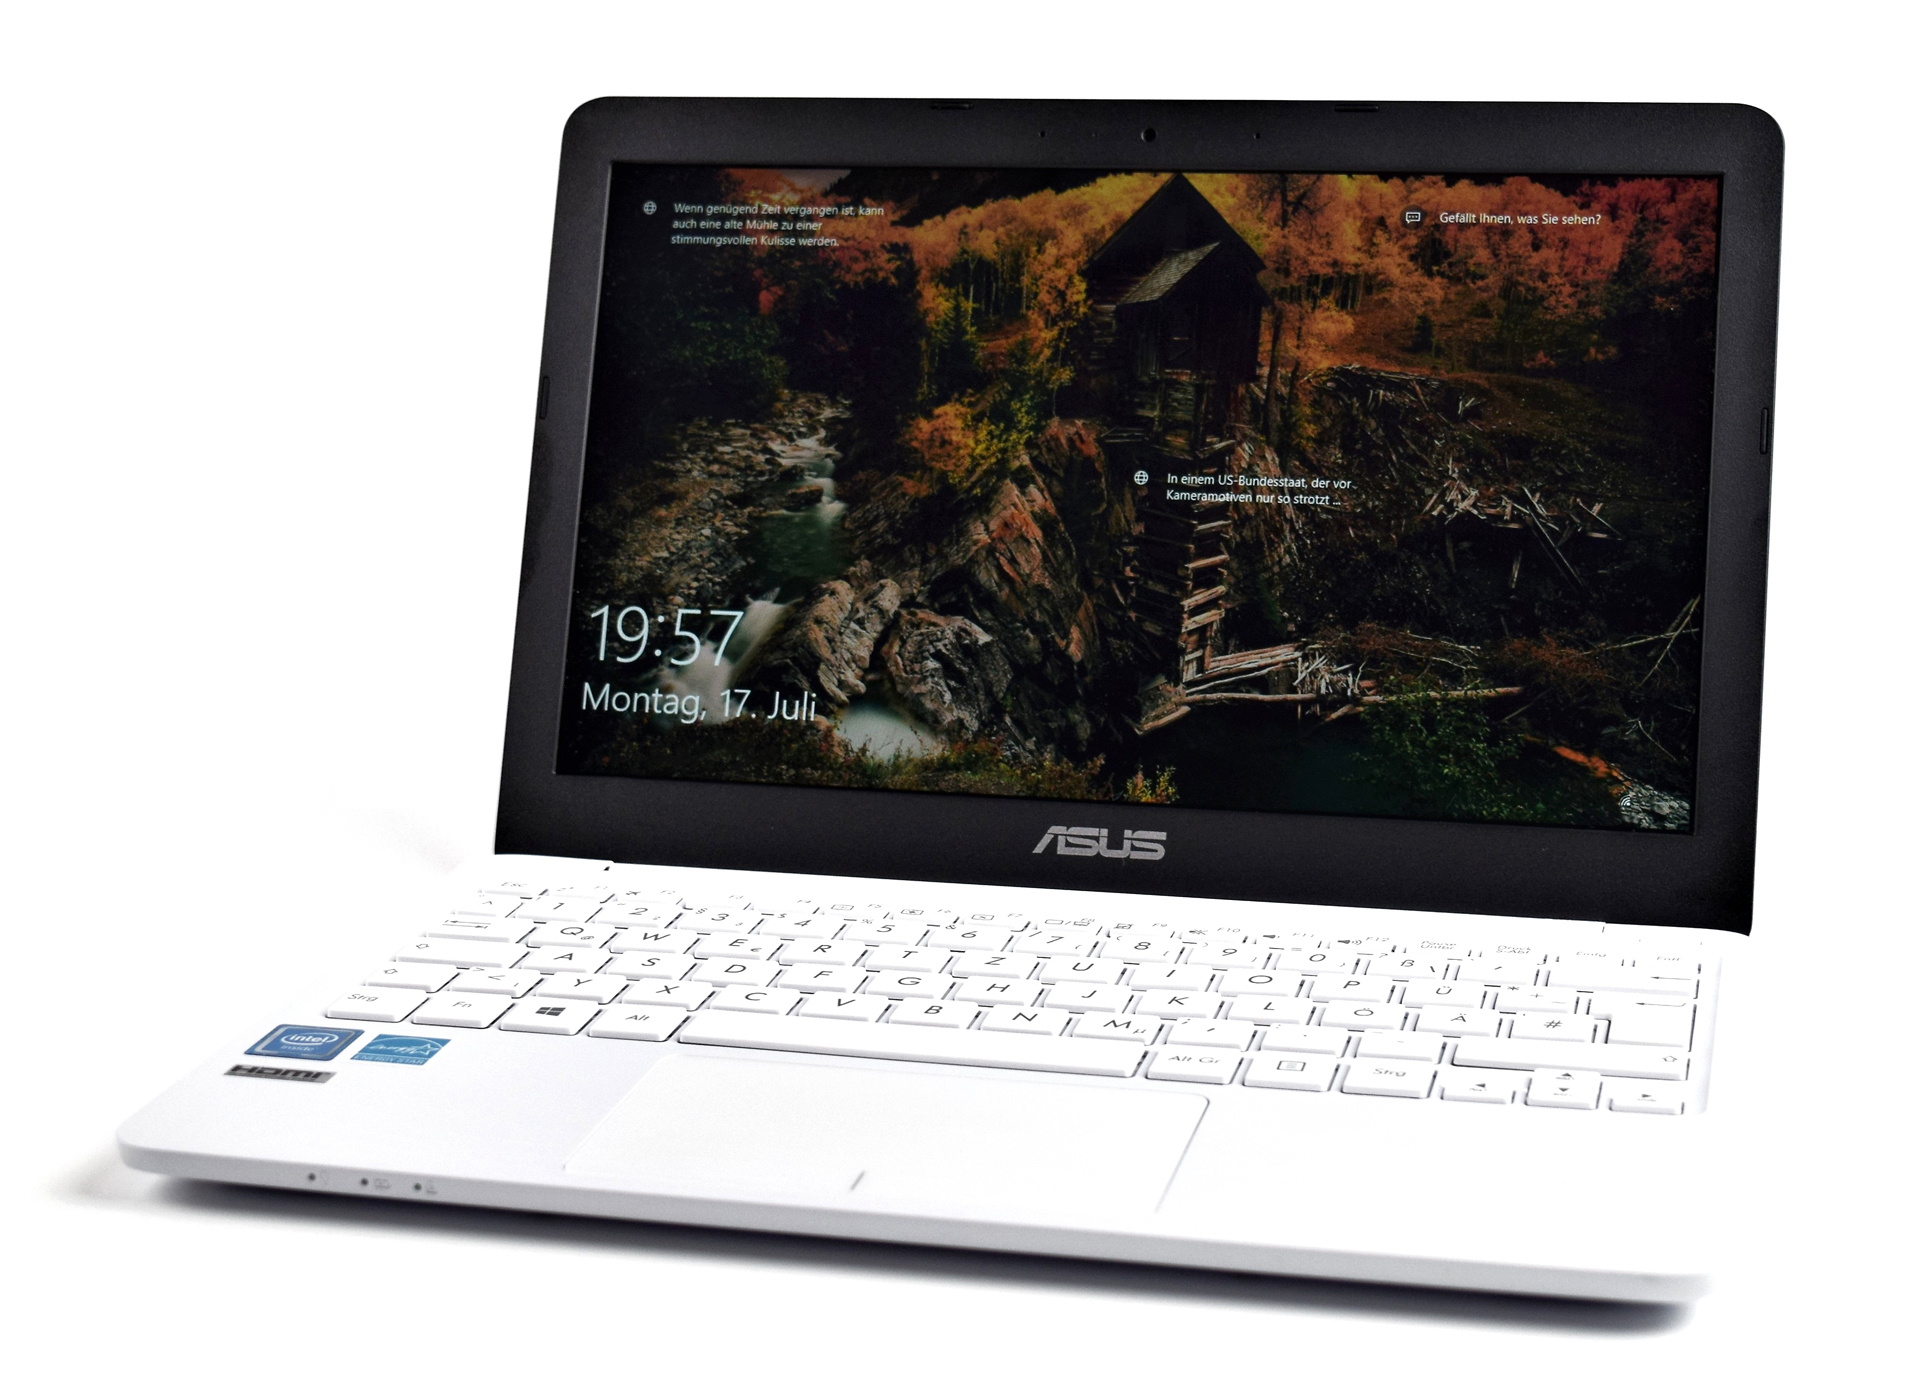 Asus VivoBook E200HA (x5-Z8350, 32 GB) Subnotebook Review 